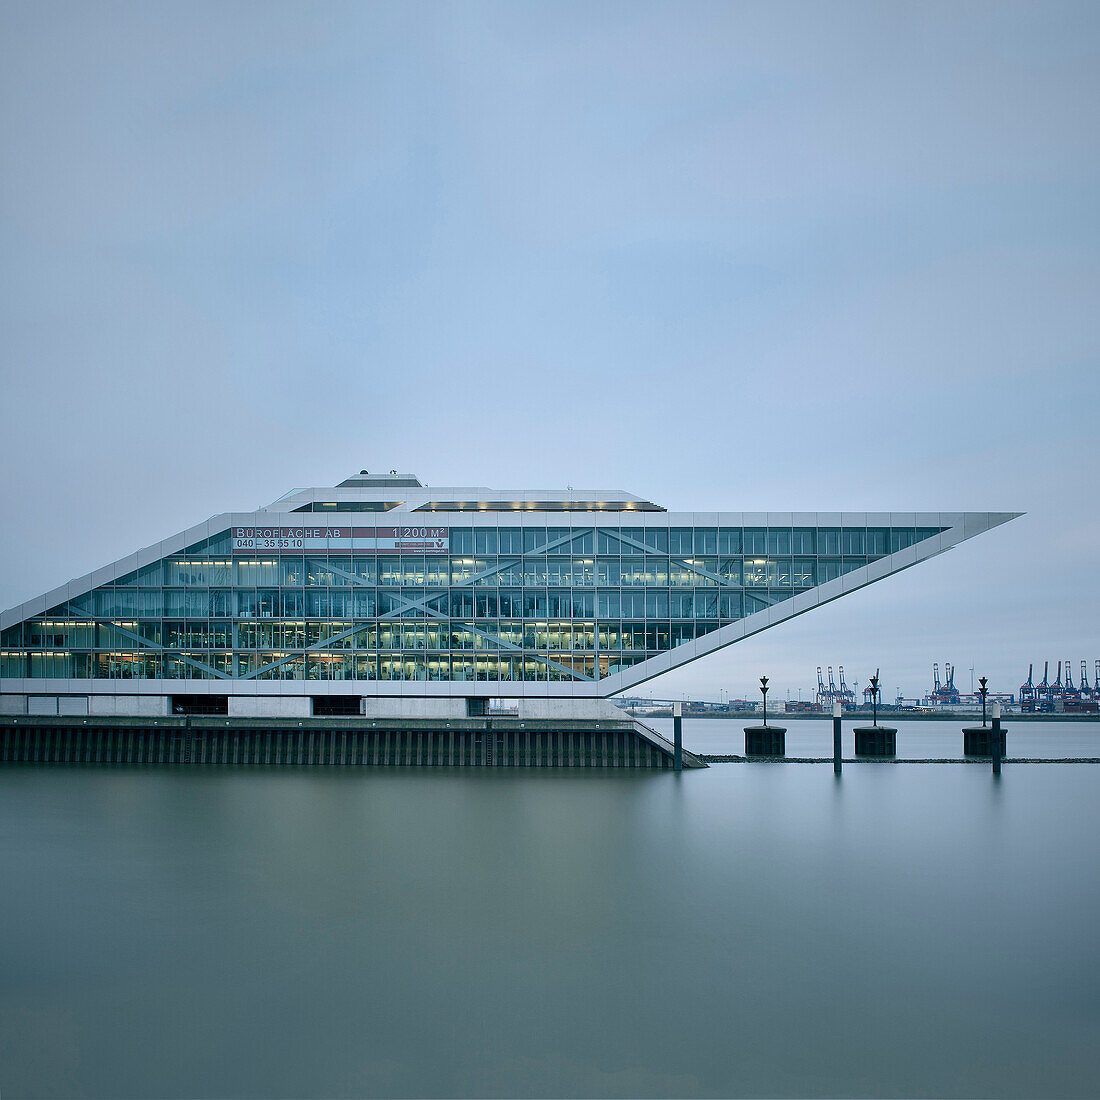 Bürogebäude Docklands beim Hamburger Hafen, Hamburg, Elbe, Deutschland, Europa